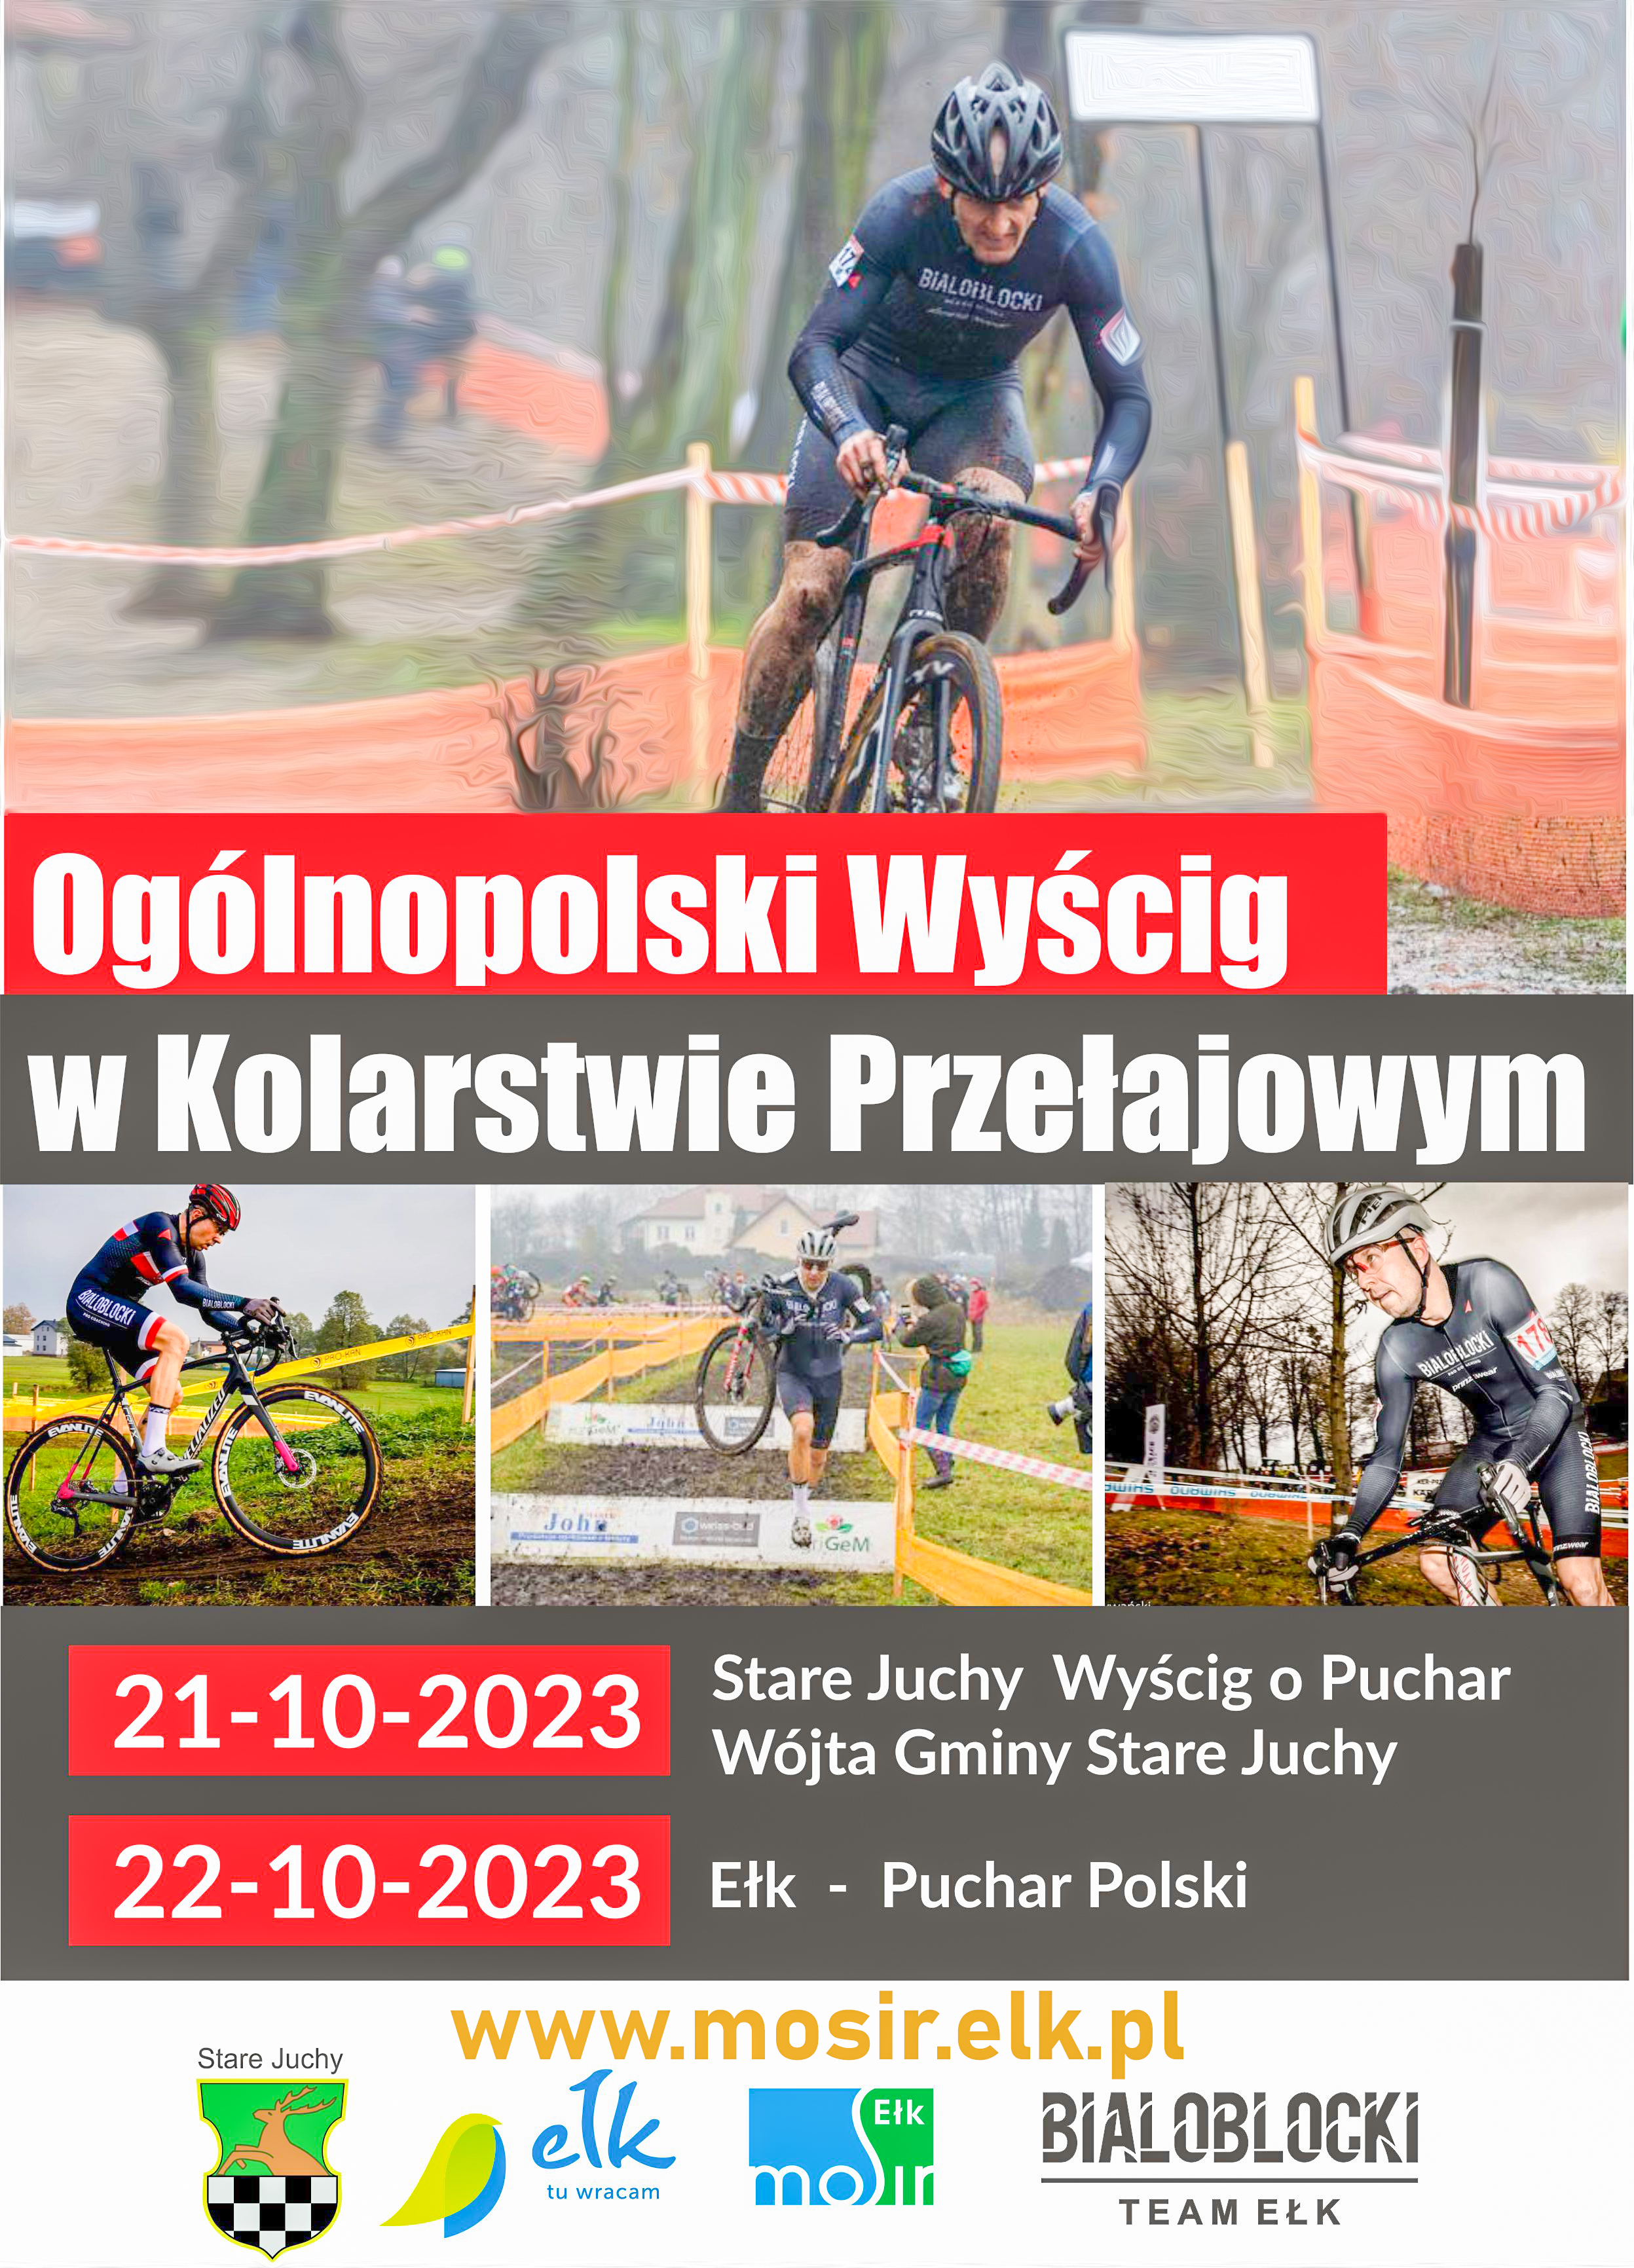 National Cyclo-cross Race